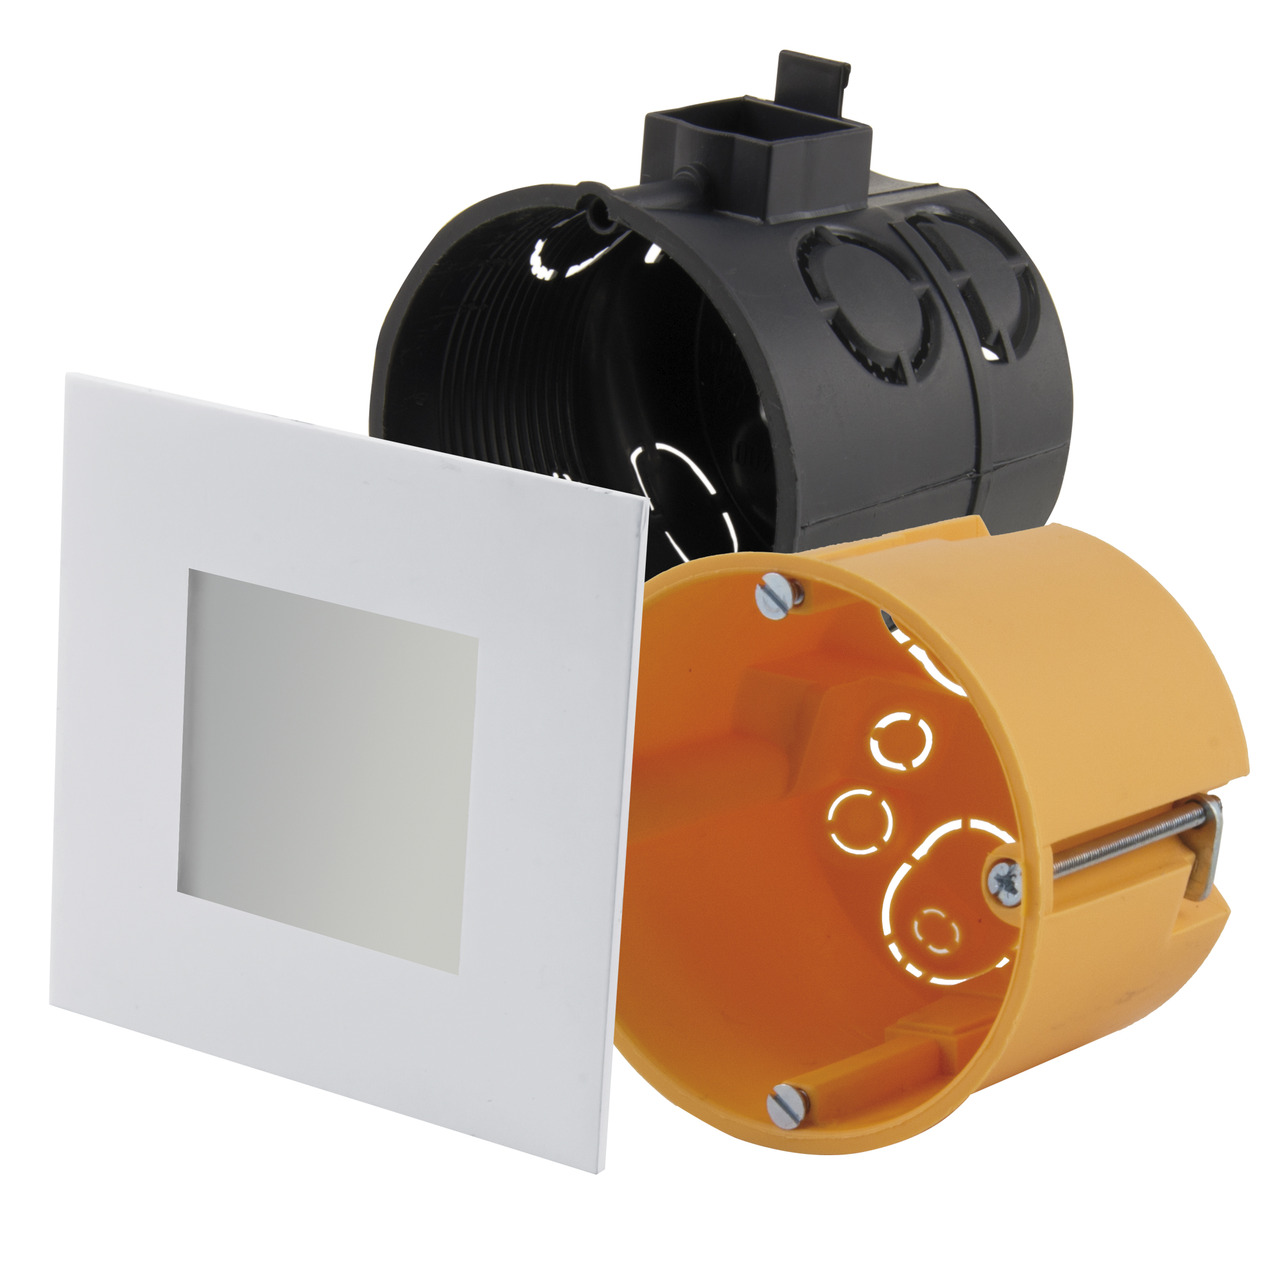 HEITRONIC 2-6-W-LED-Einbaupanel Nizza- passt in Schalter- und Hohlwanddosen- eckig- weiss- IP20